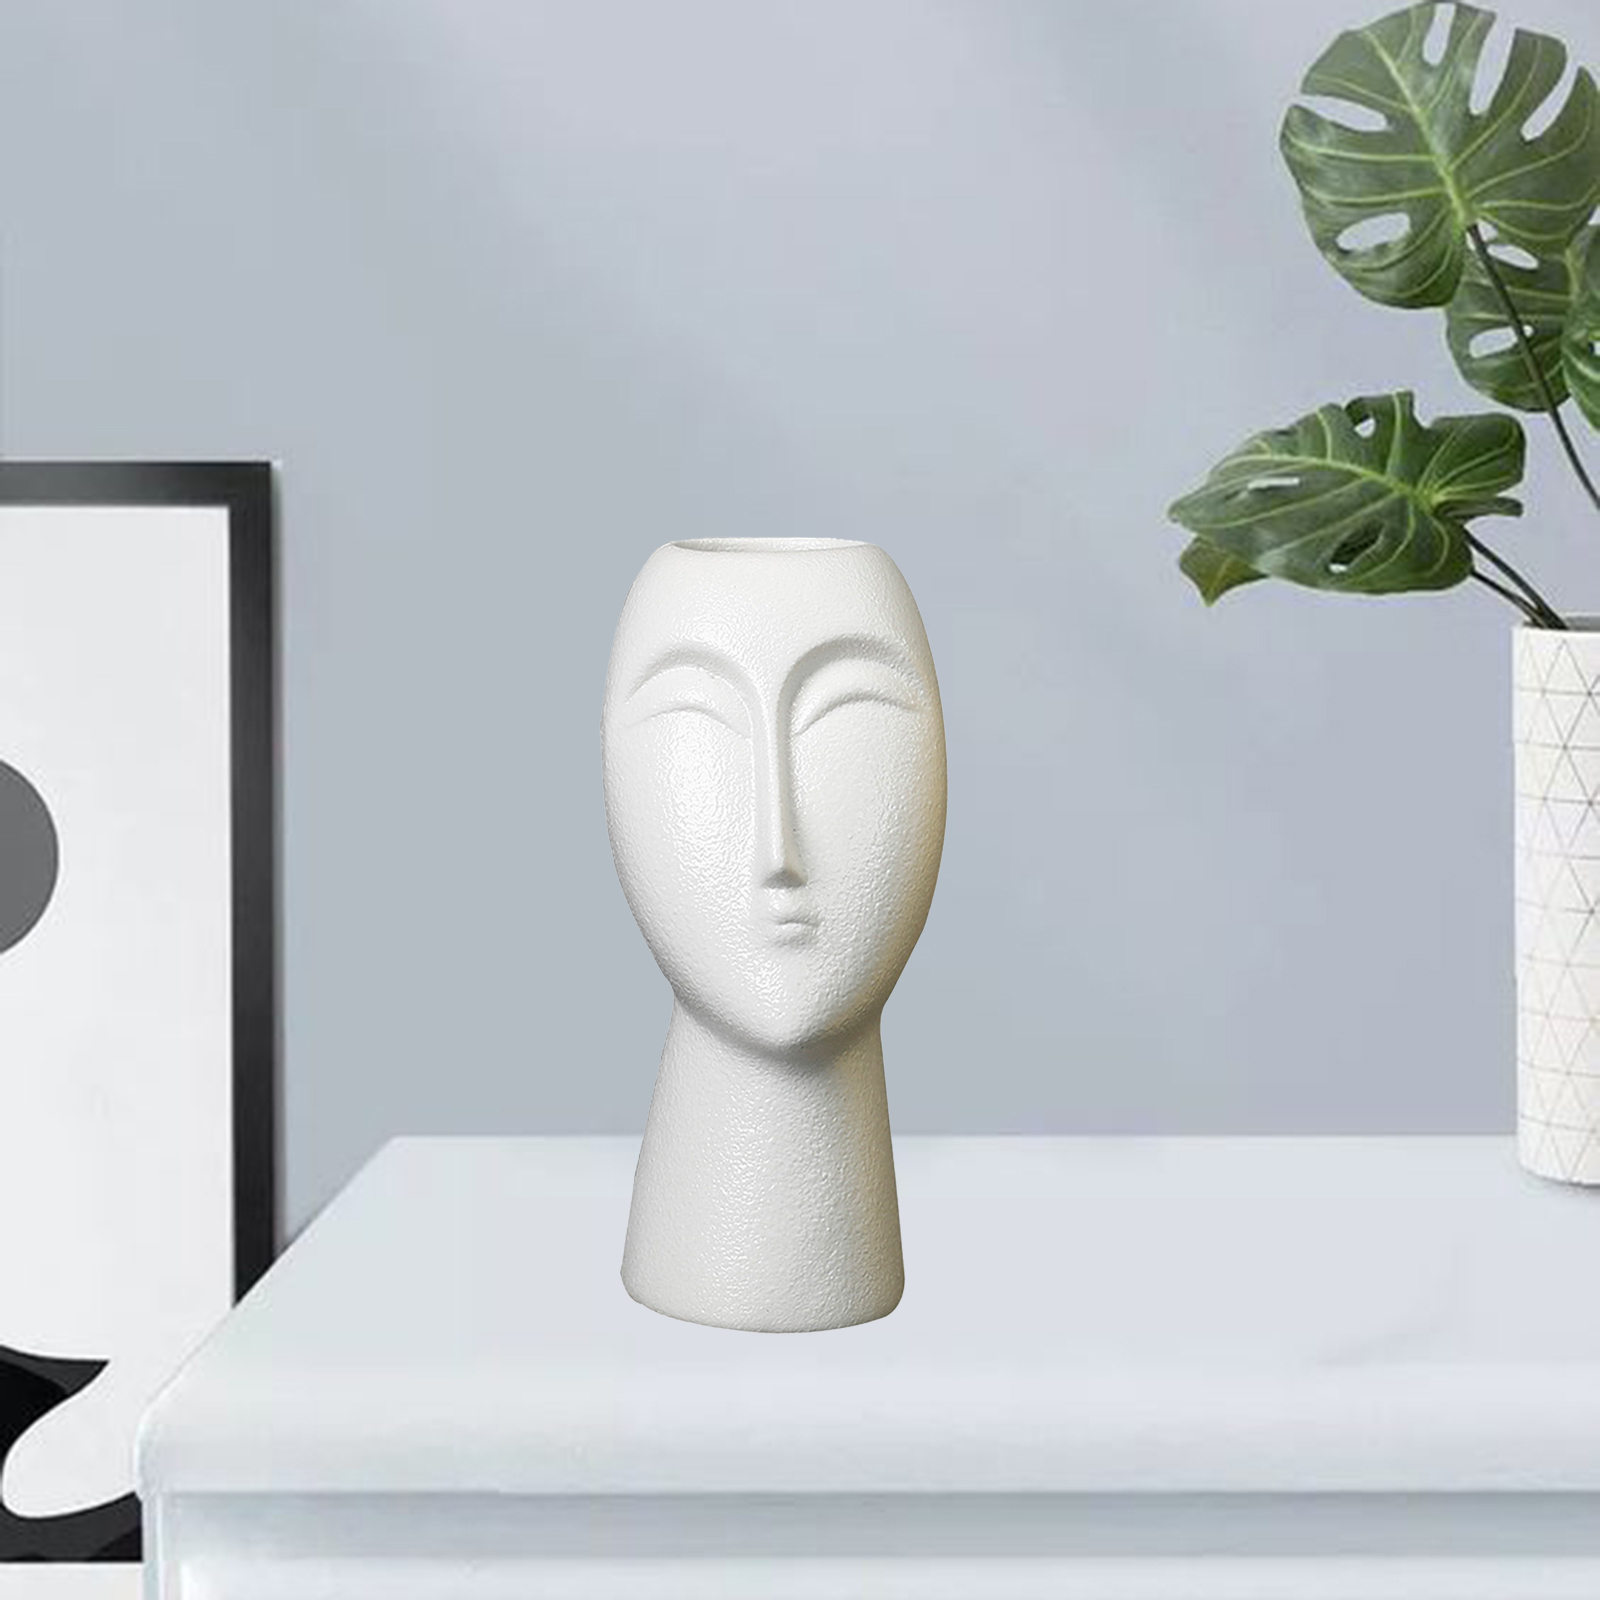 Ceramic Vase Modern Flower Vase Pot Decoration Home Table Decor White